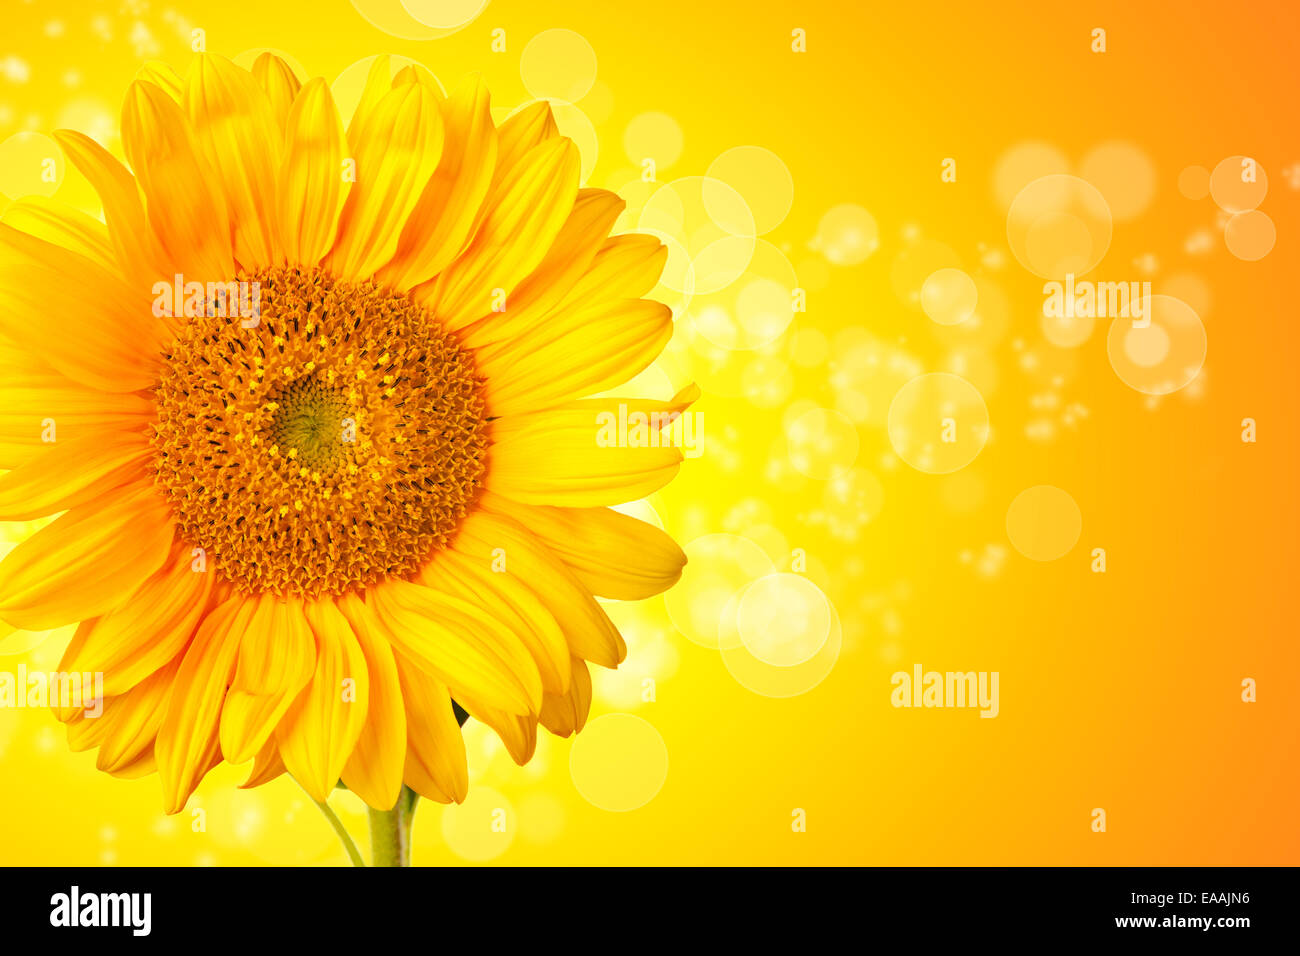 Fiore di girasole dettaglio con abstract sfondo lucido Foto Stock